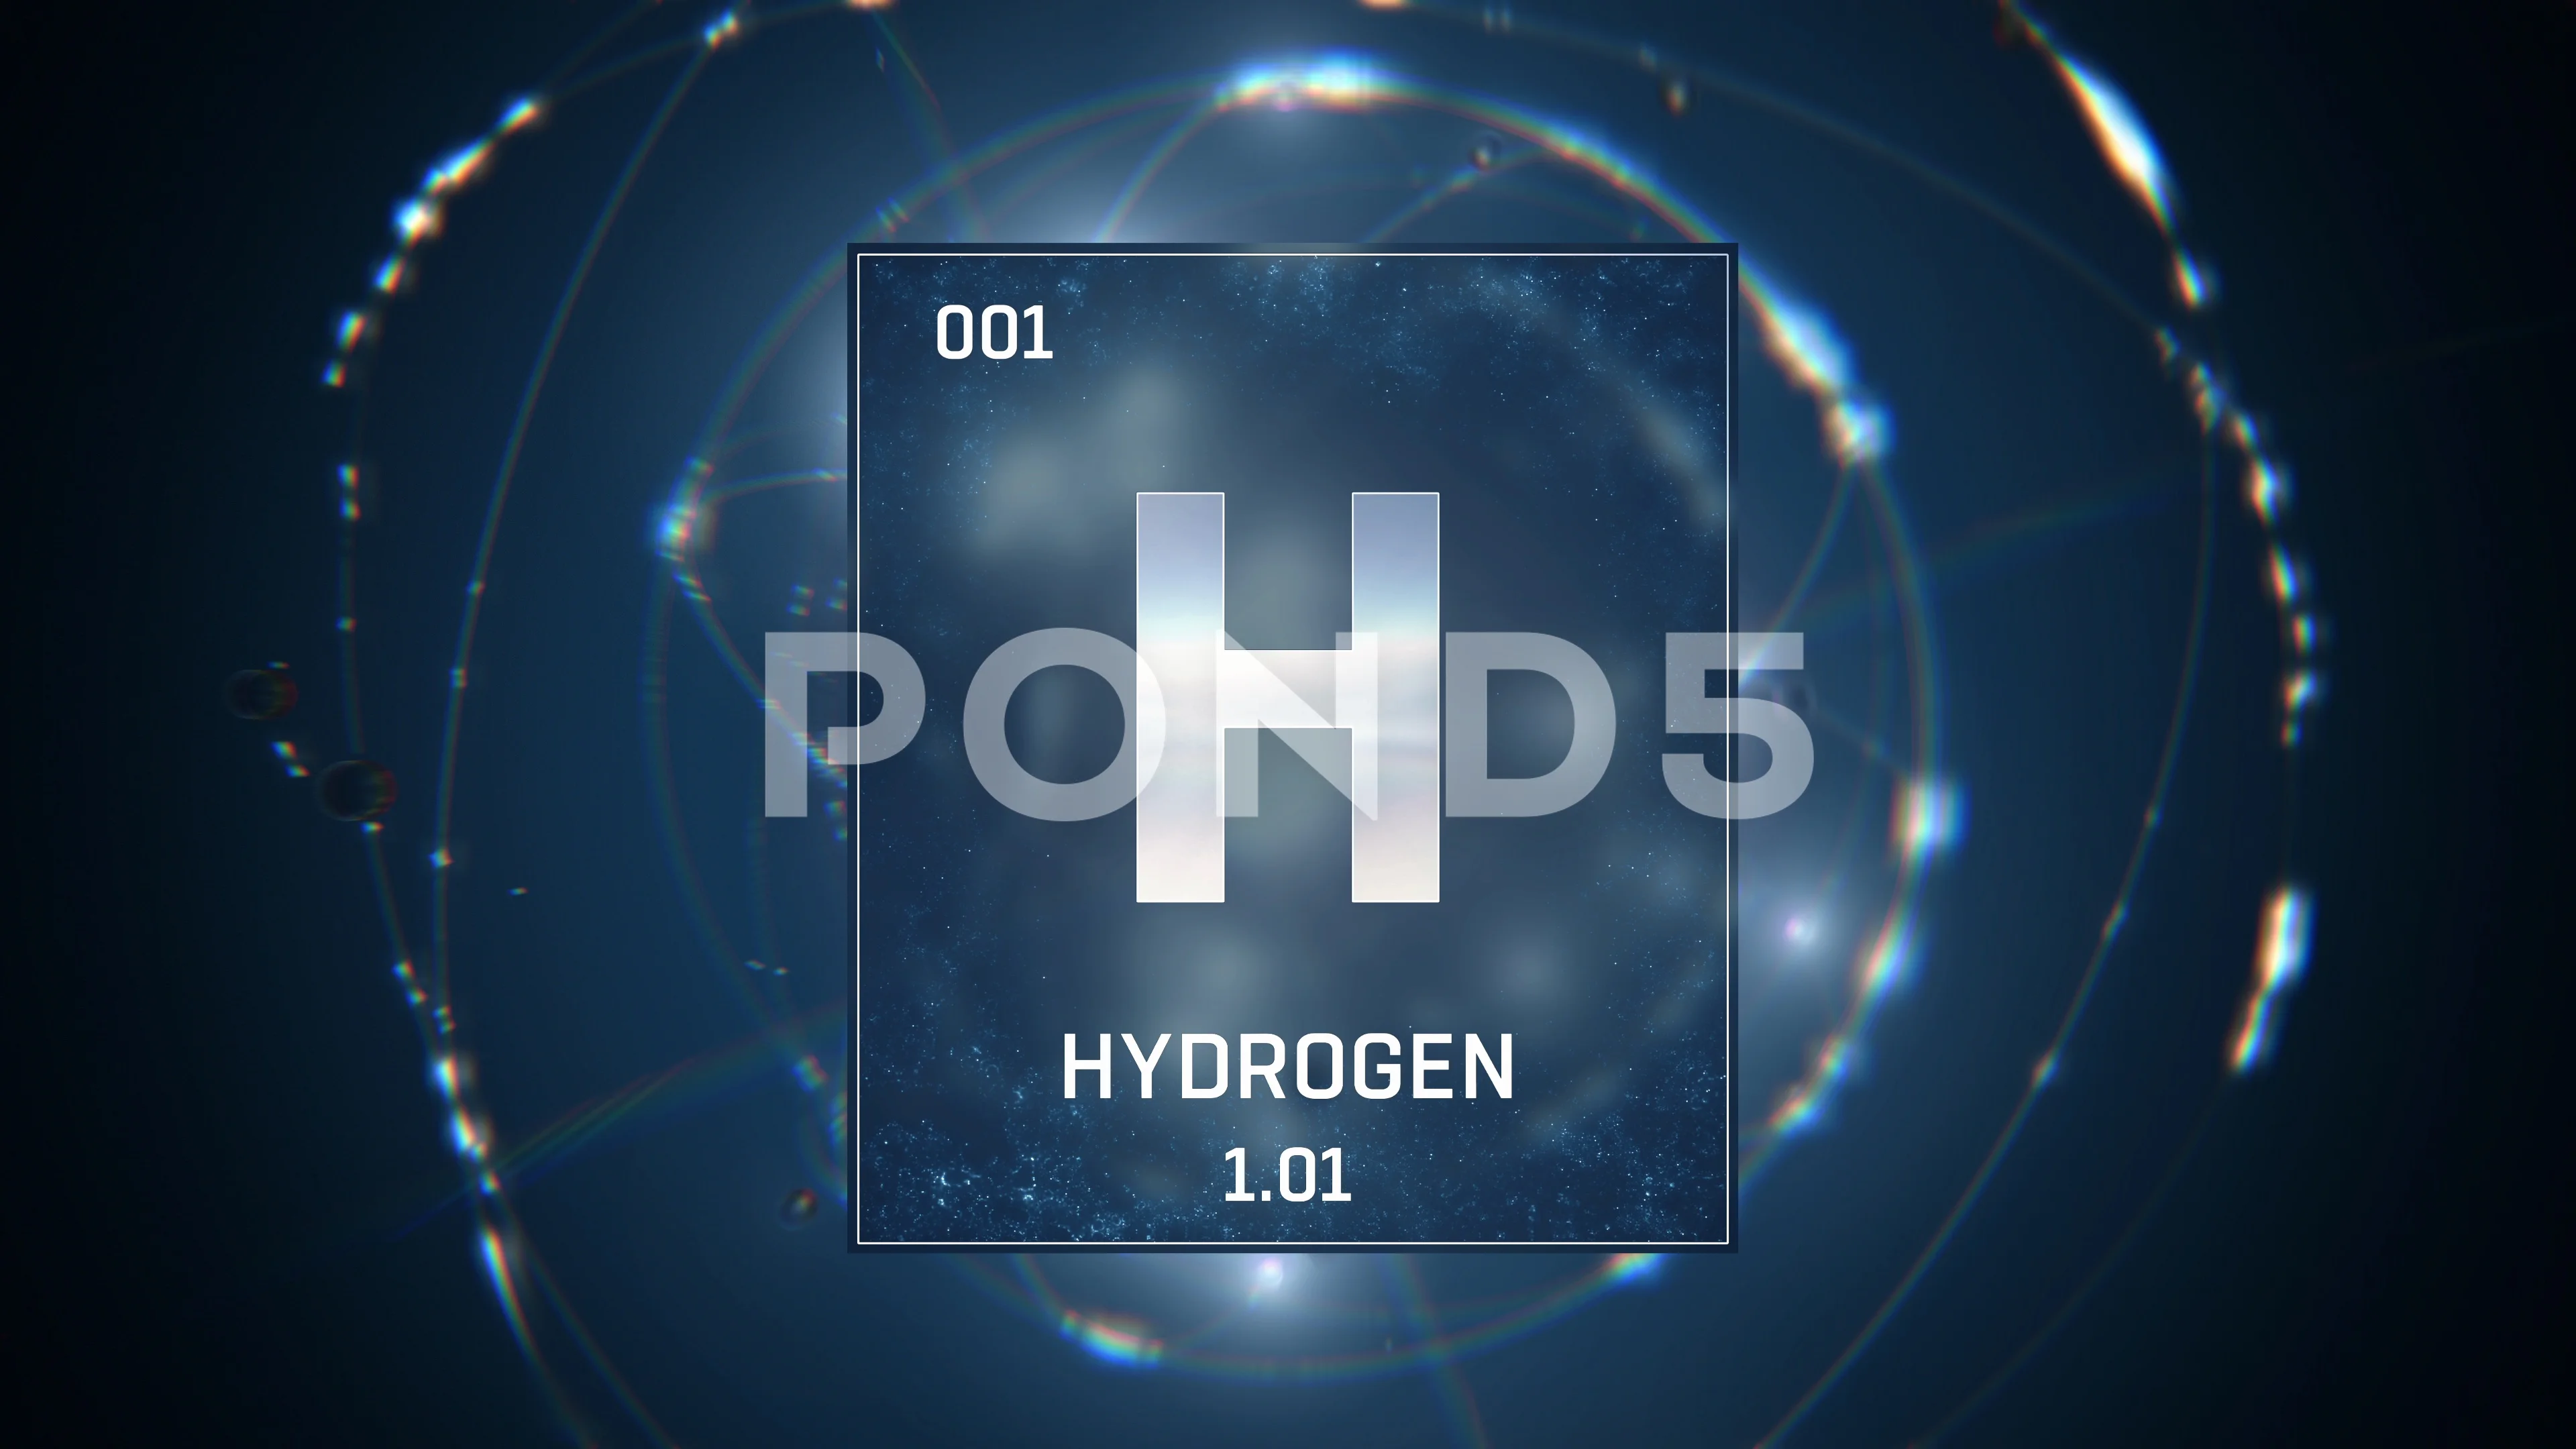 element hydrogen